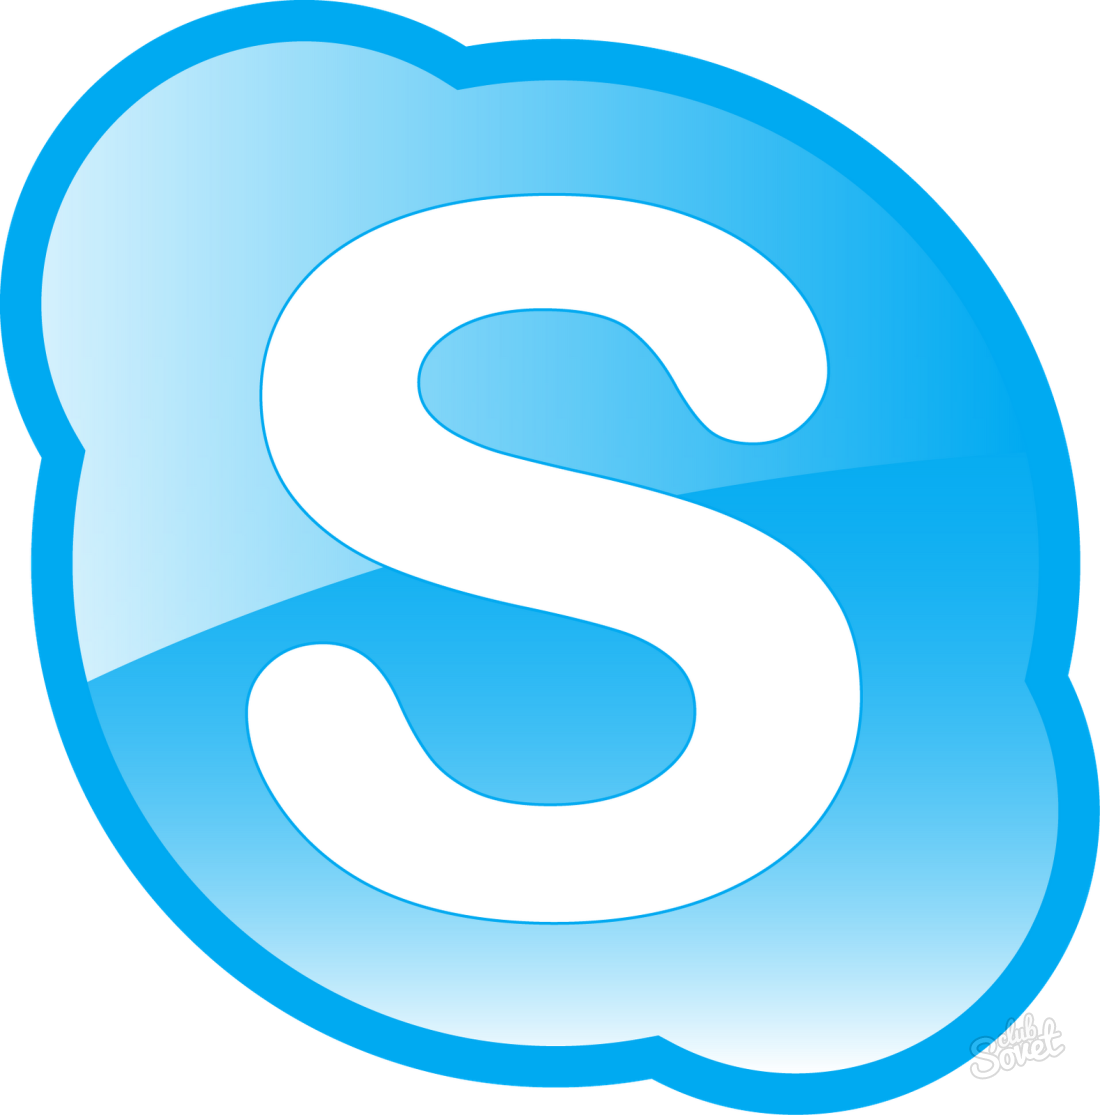 How to call Skype